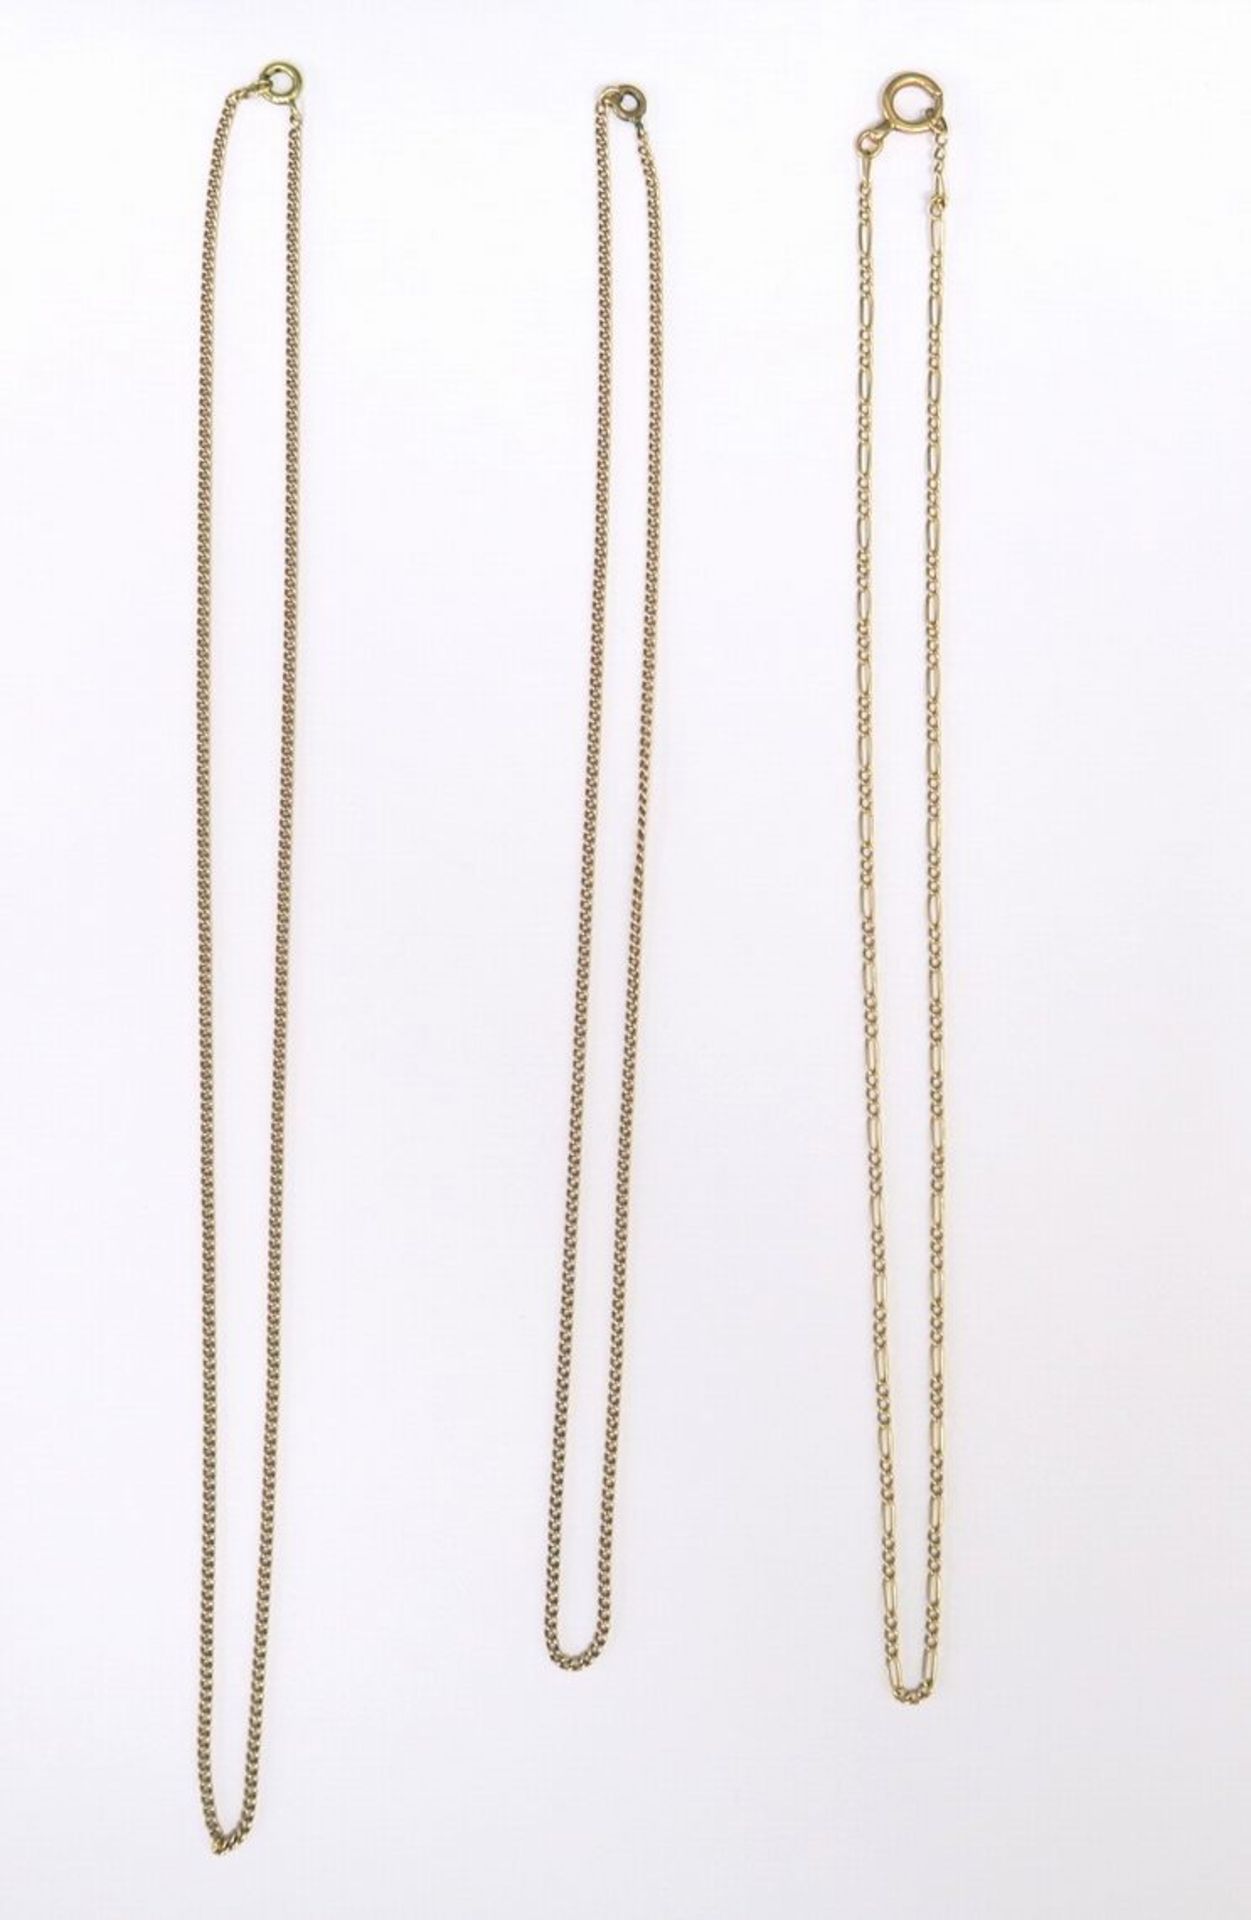 Drei HalskettenJeweils mit Federring, GG, 585 (nicht punziert, geprüft). L. 49 cm, L. 50 cm und L.